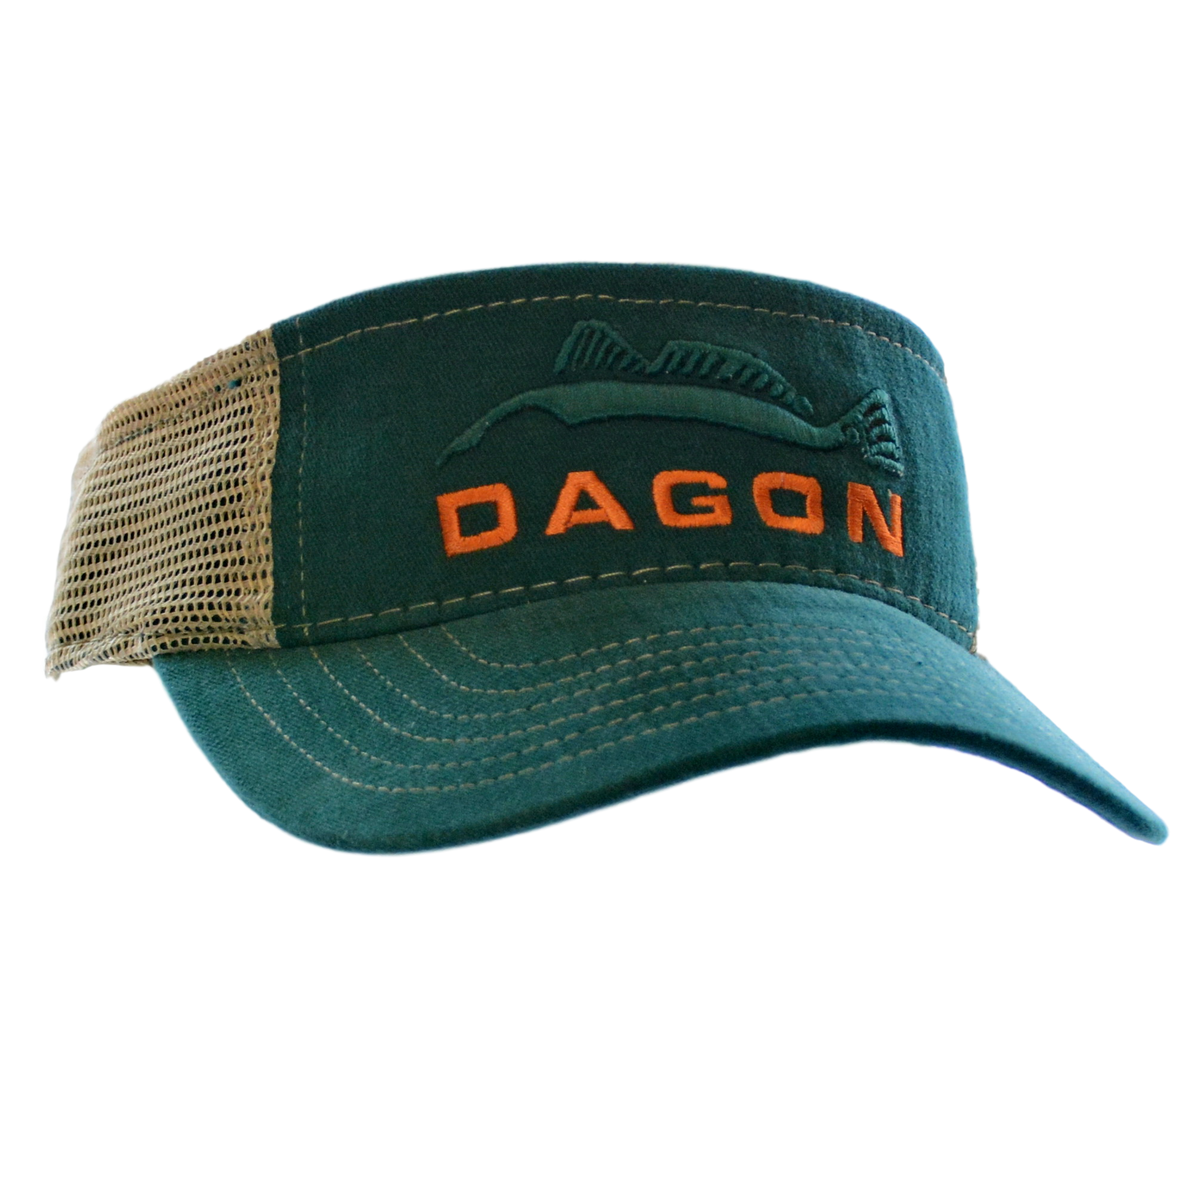 Dagon Embroidered Mesh Back Visor green and tan